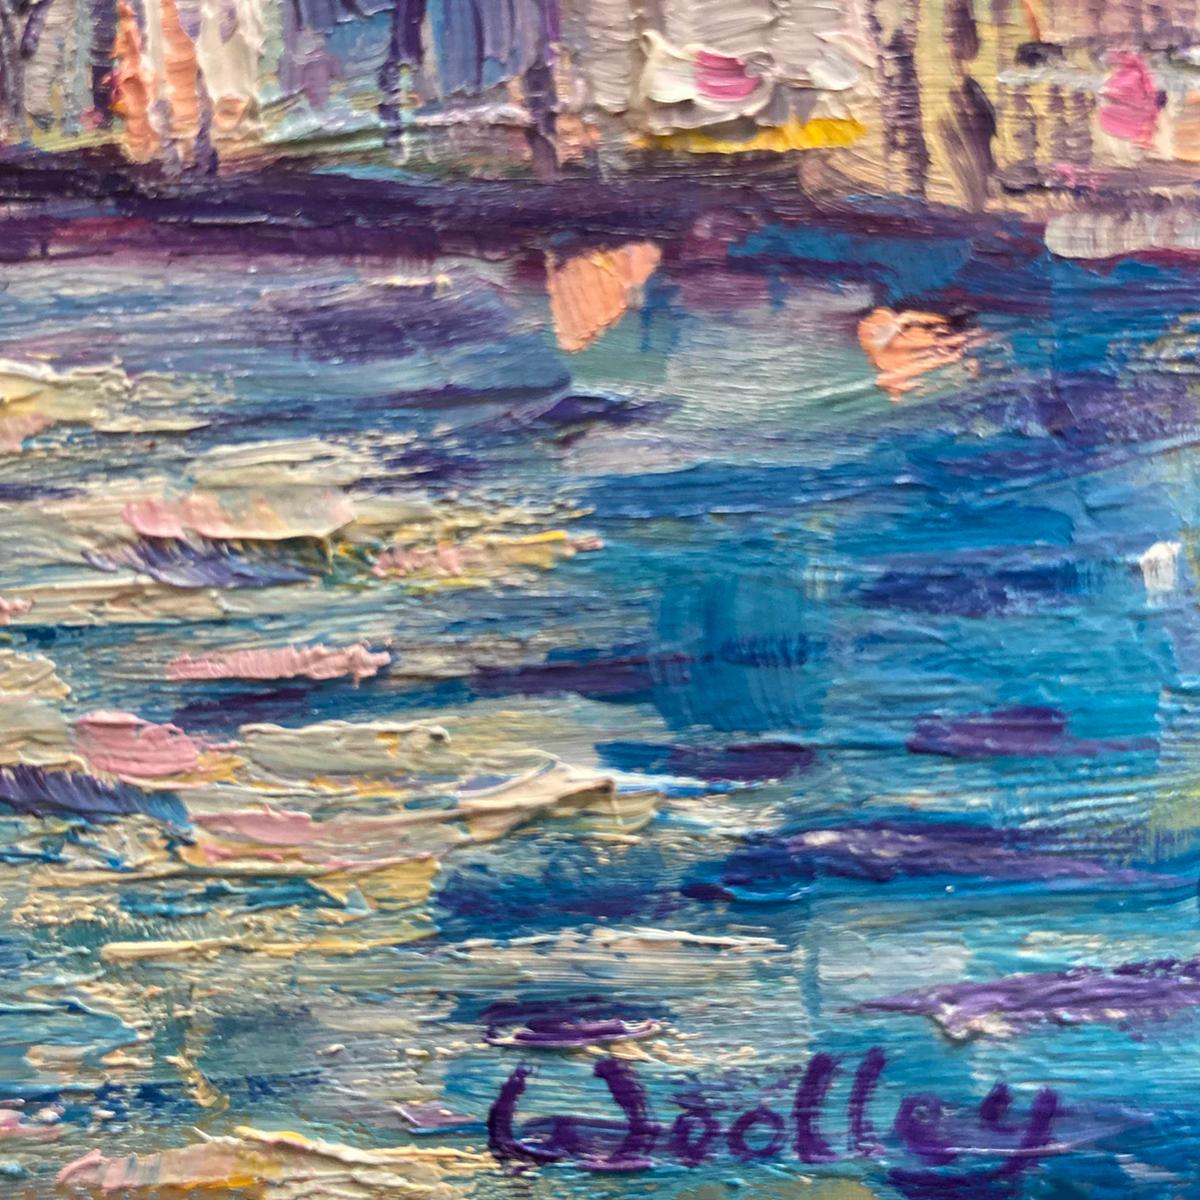 Venise est une peinture originale d'Eleanor Woolley. Inspirée par le Grand Canal de Venise, cette peinture représente le coucher de soleil se reflétant dans la surface du canal. Les moisissures bleues atmosphériques sont floues sur l'eau, de petits